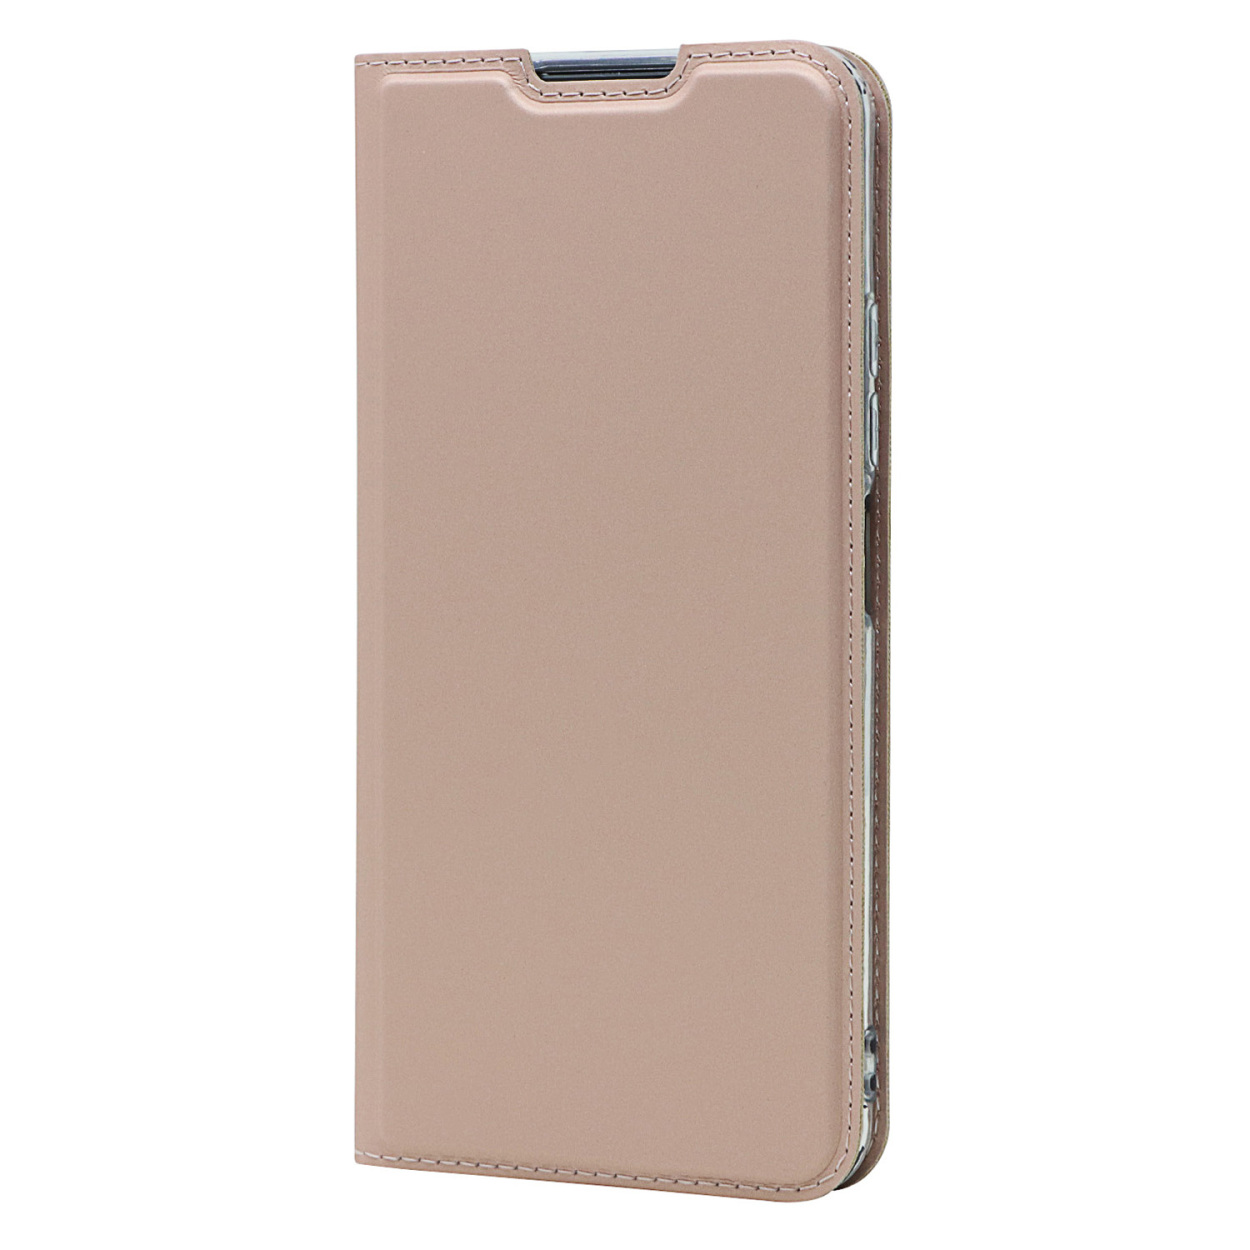 iPhone 6 ケース 手帳型 6s  6 S Plus プラス アイフォン カード 収納 スタン...